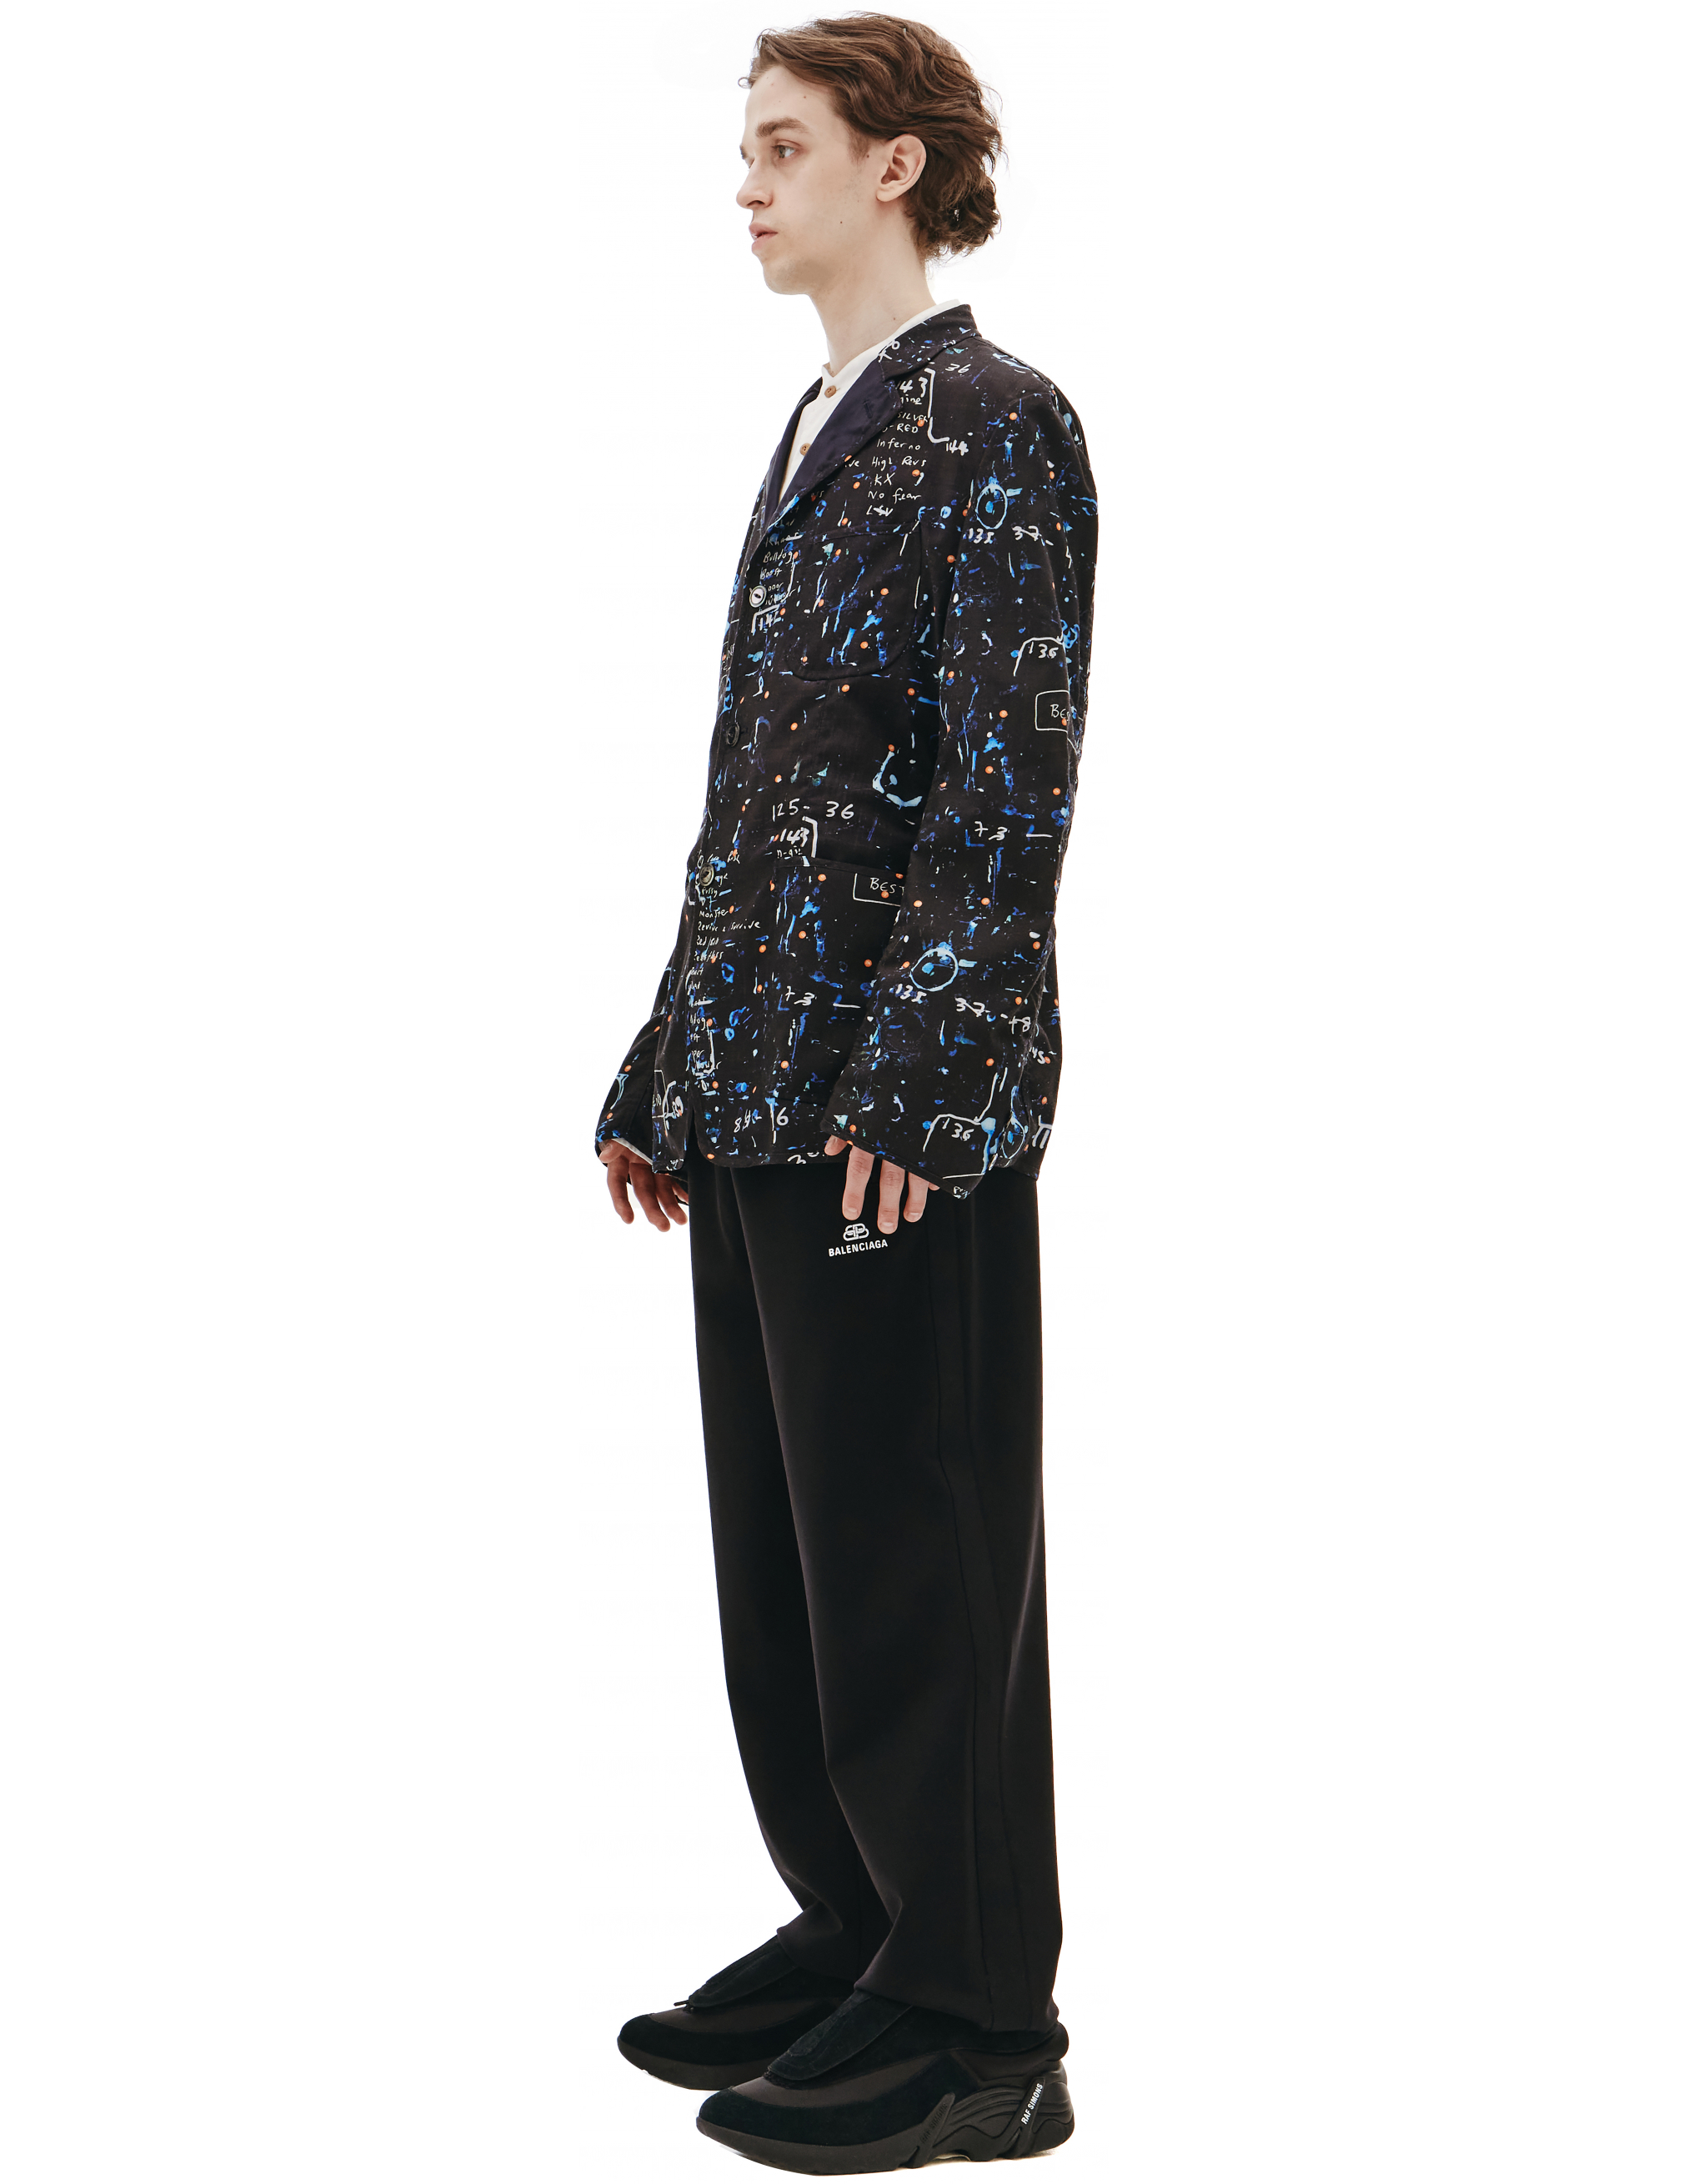 Черный пиджак из шерсти - Junya Watanabe WG-J004-051-1 Фото 2